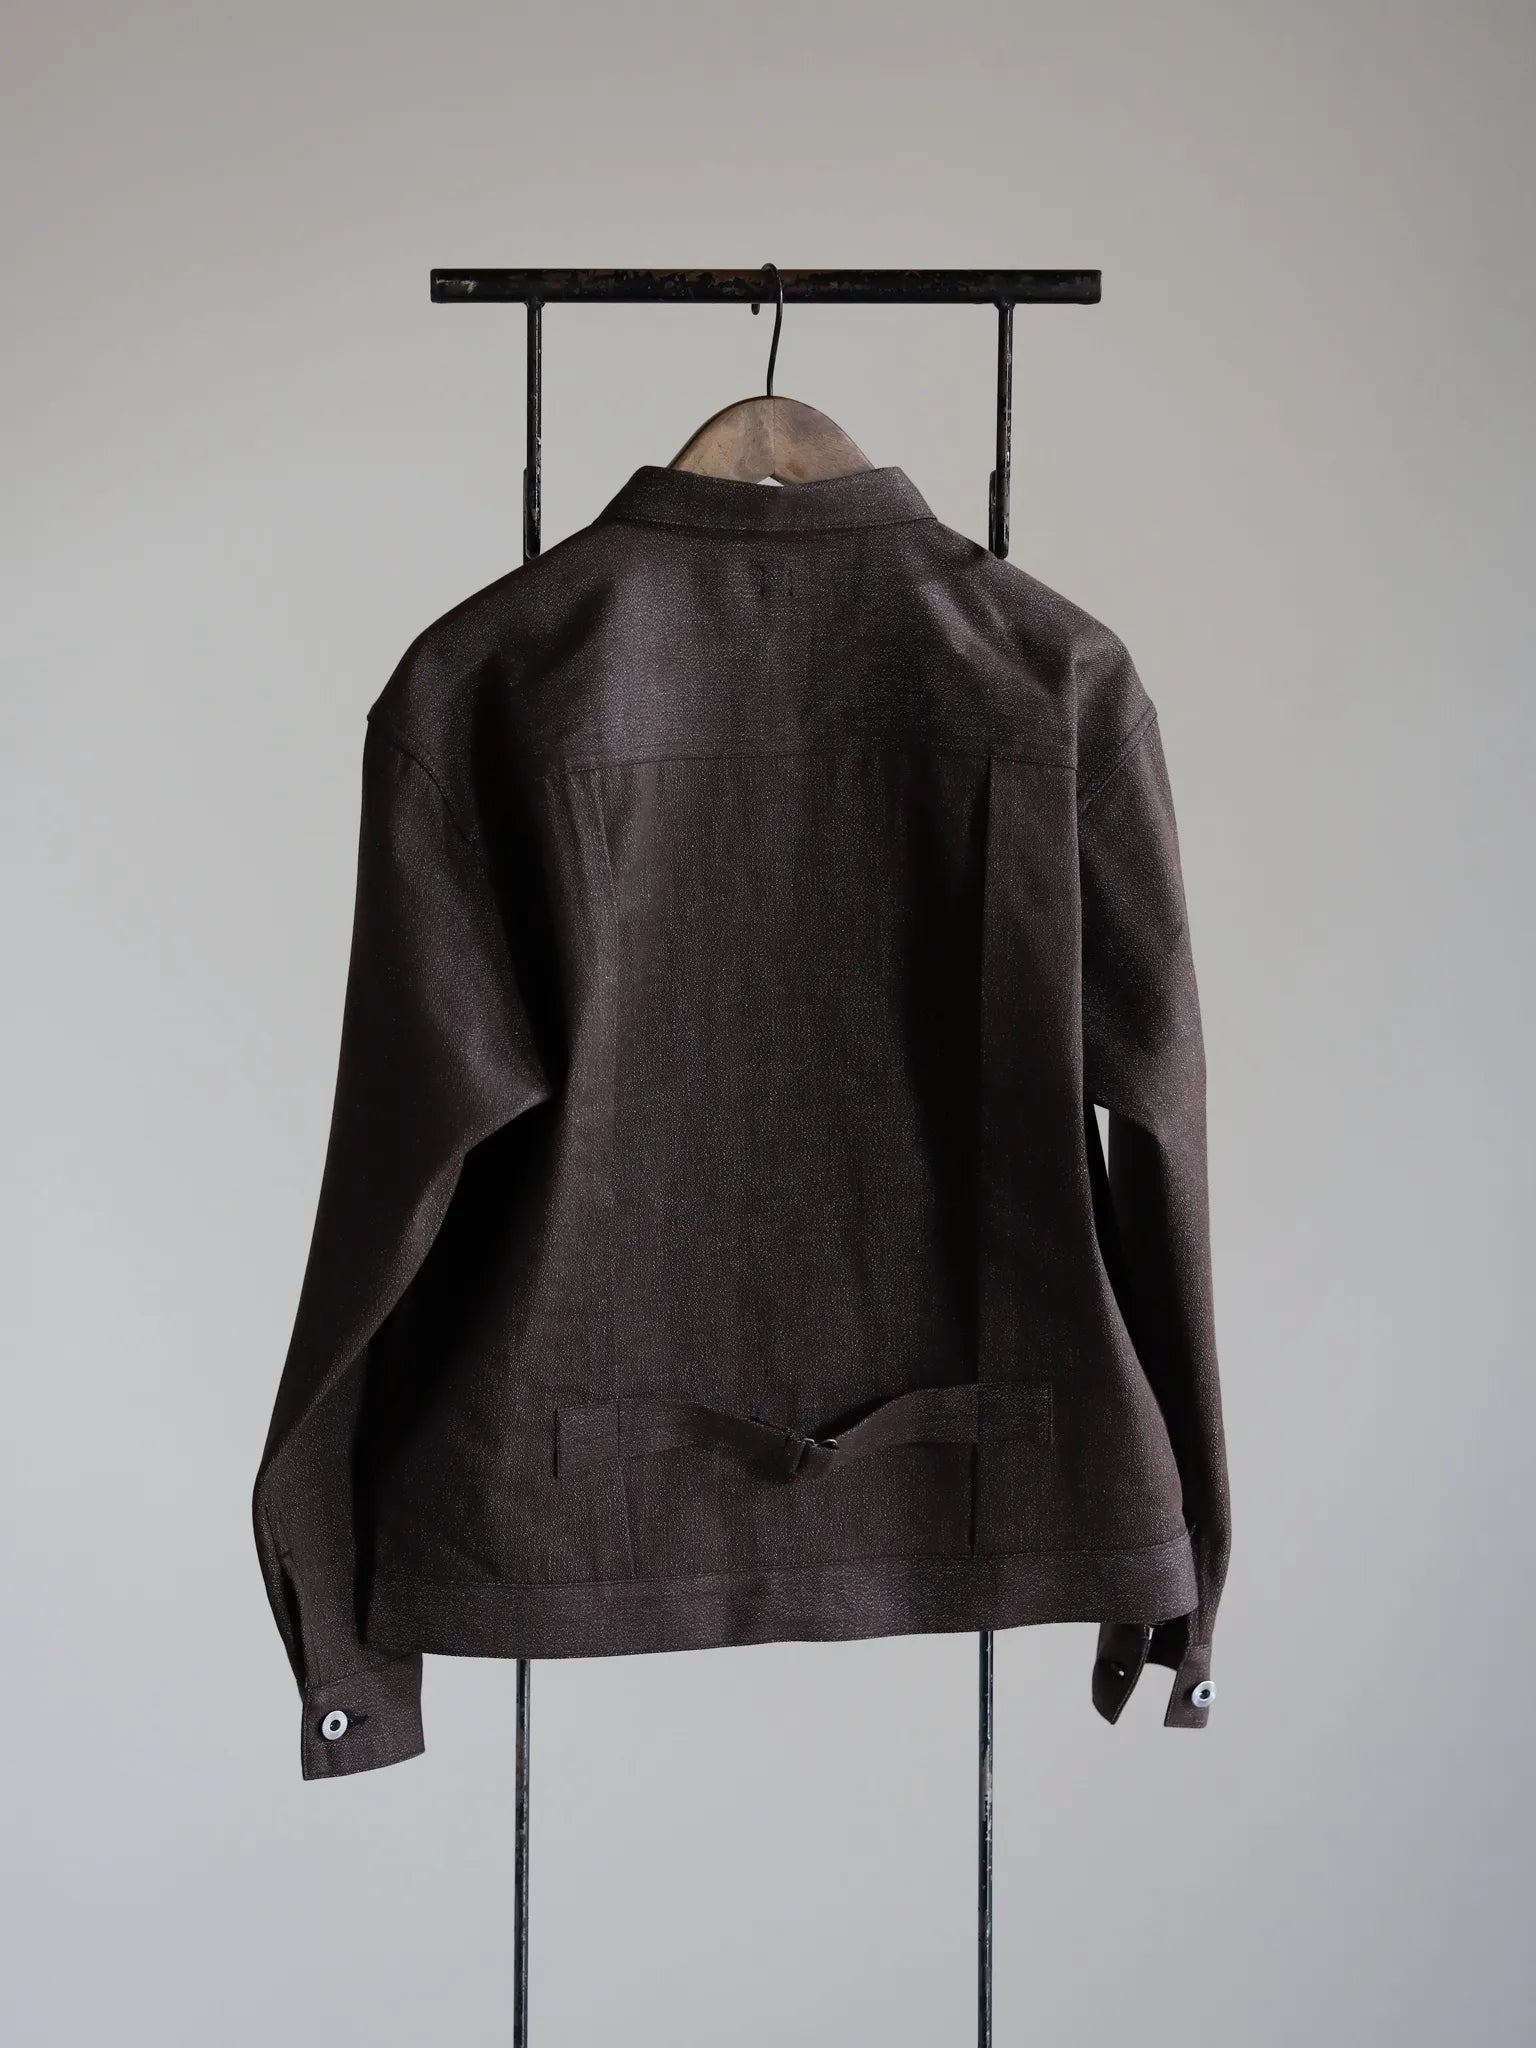 taiga-takahashi-buckle-backed-jacket-brown-2